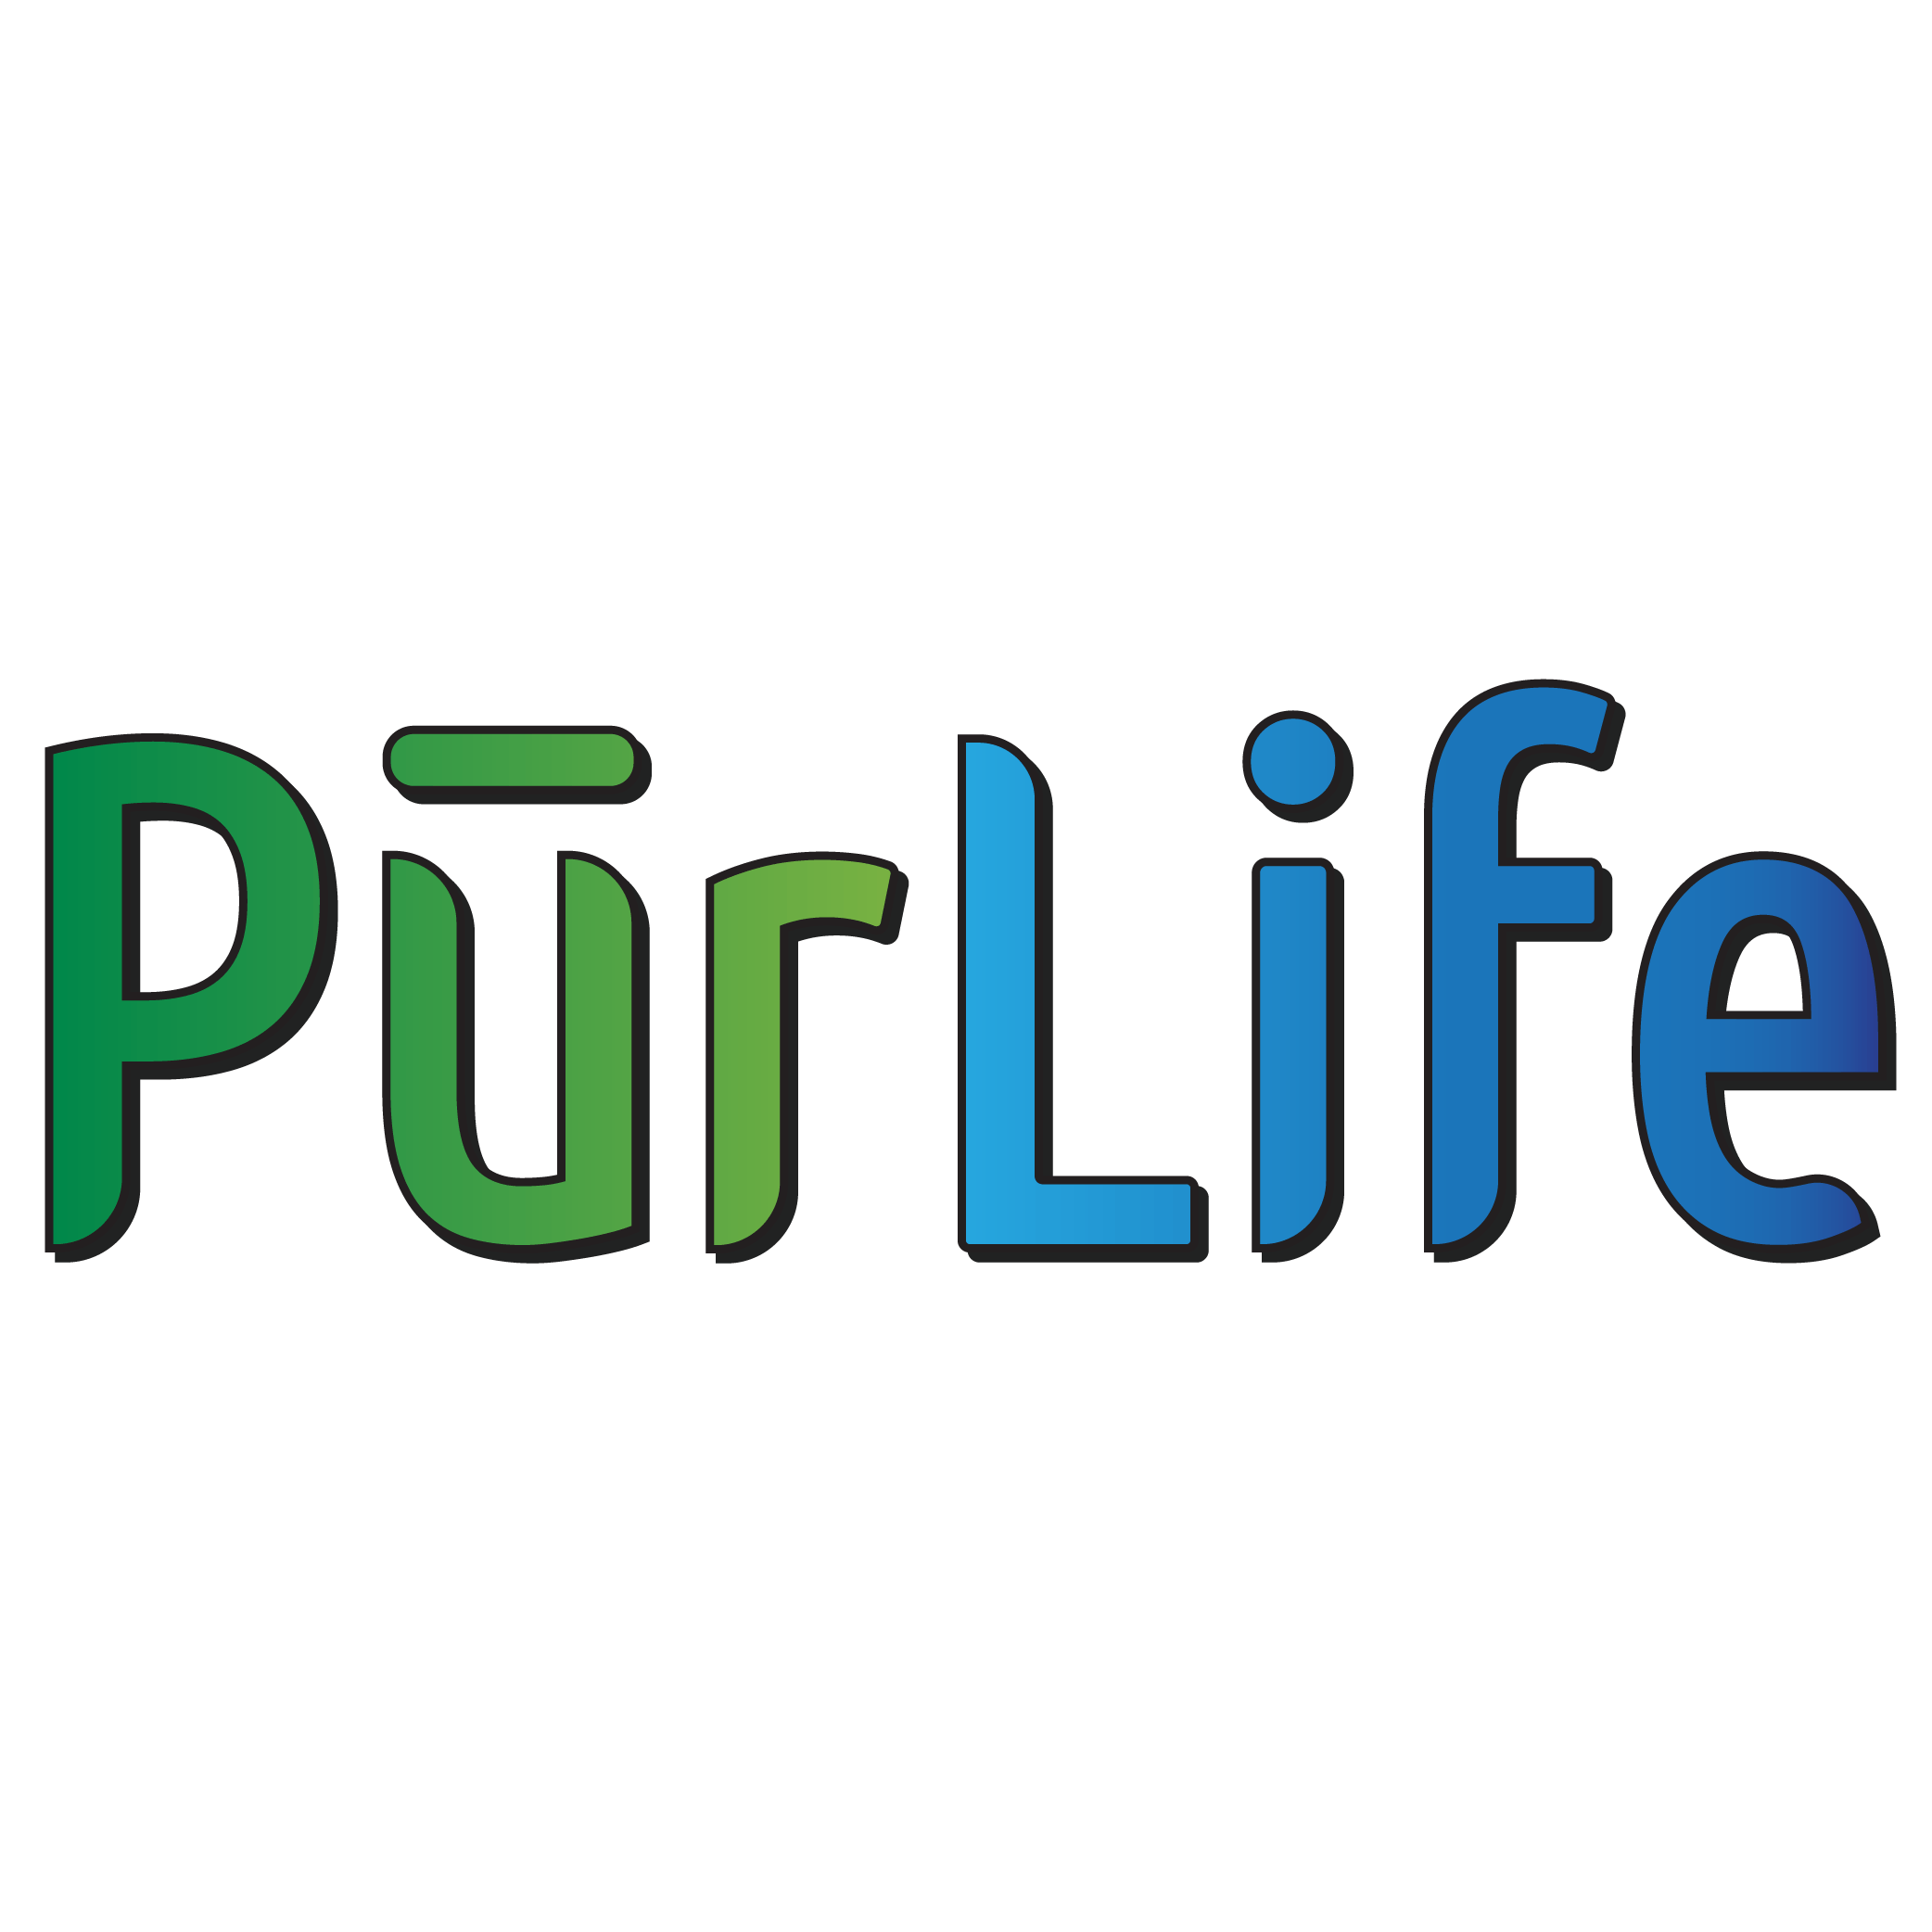 PurLife Dispensary Clovis logo